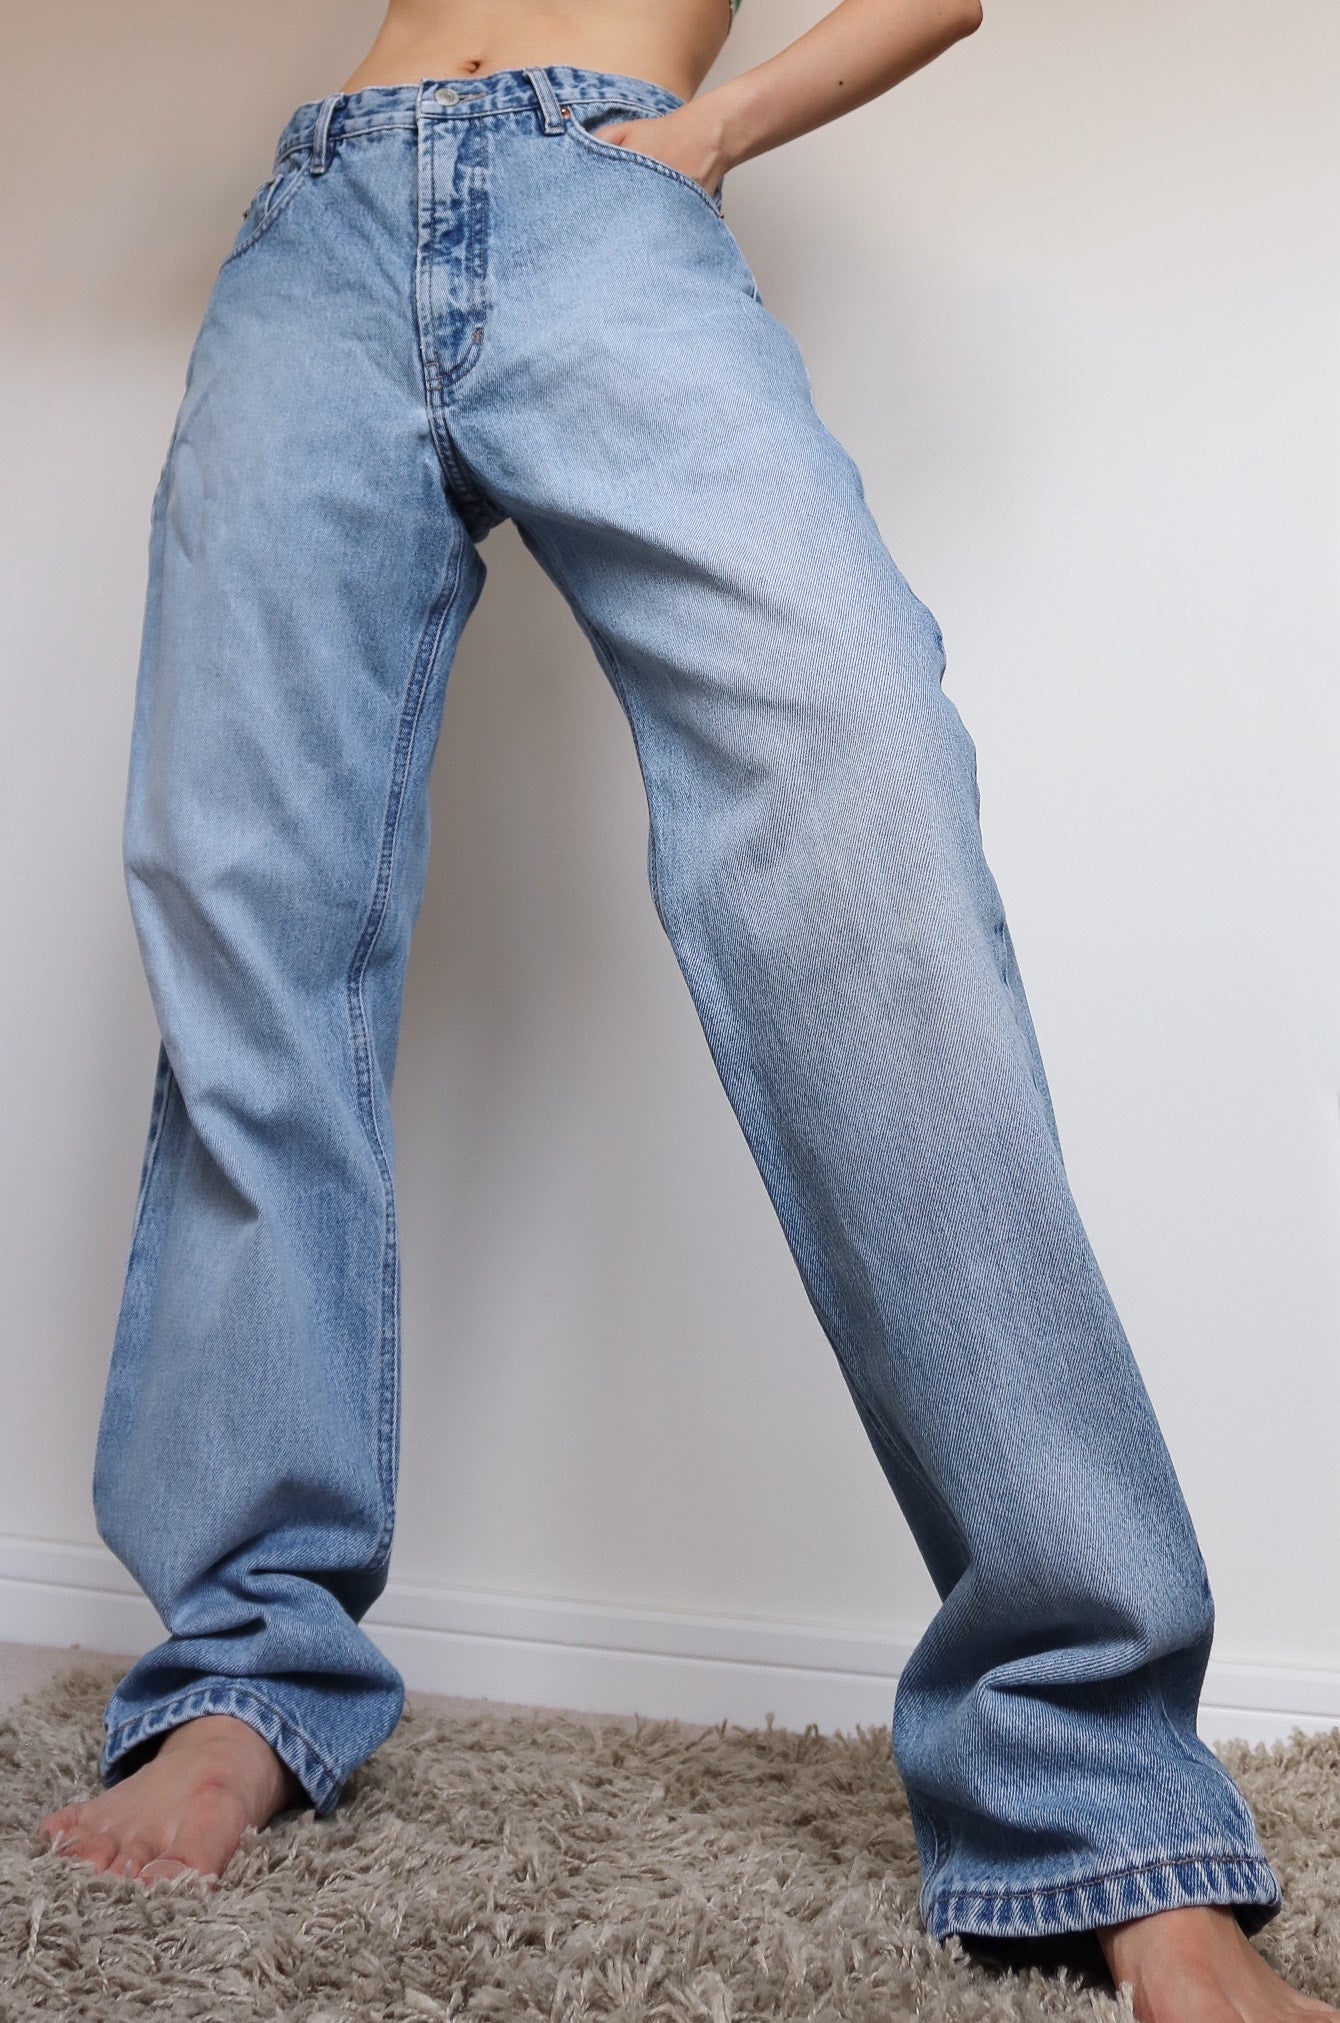 90s Vintage Men Jinglers Jeans High Waisted Light Blue Jeans Trousers Littledreamer Uk